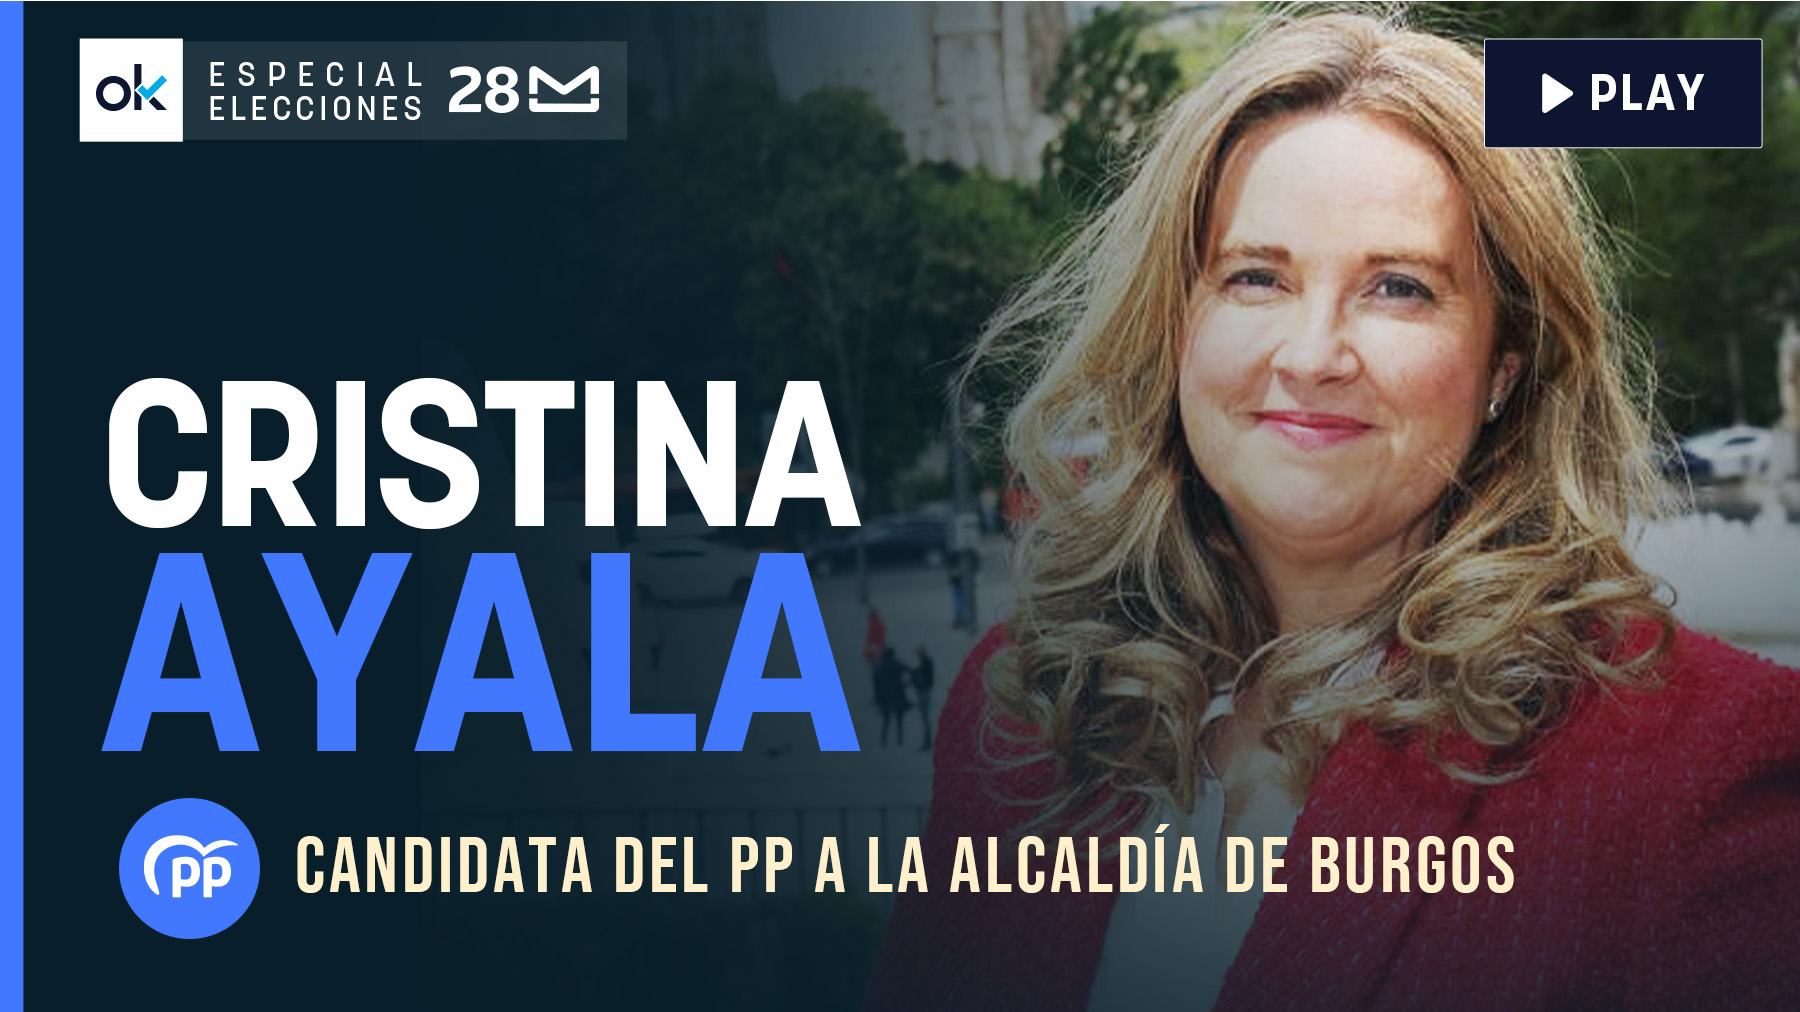 Cristina Ayala, candidata del PP a la alcaldía de Burgos